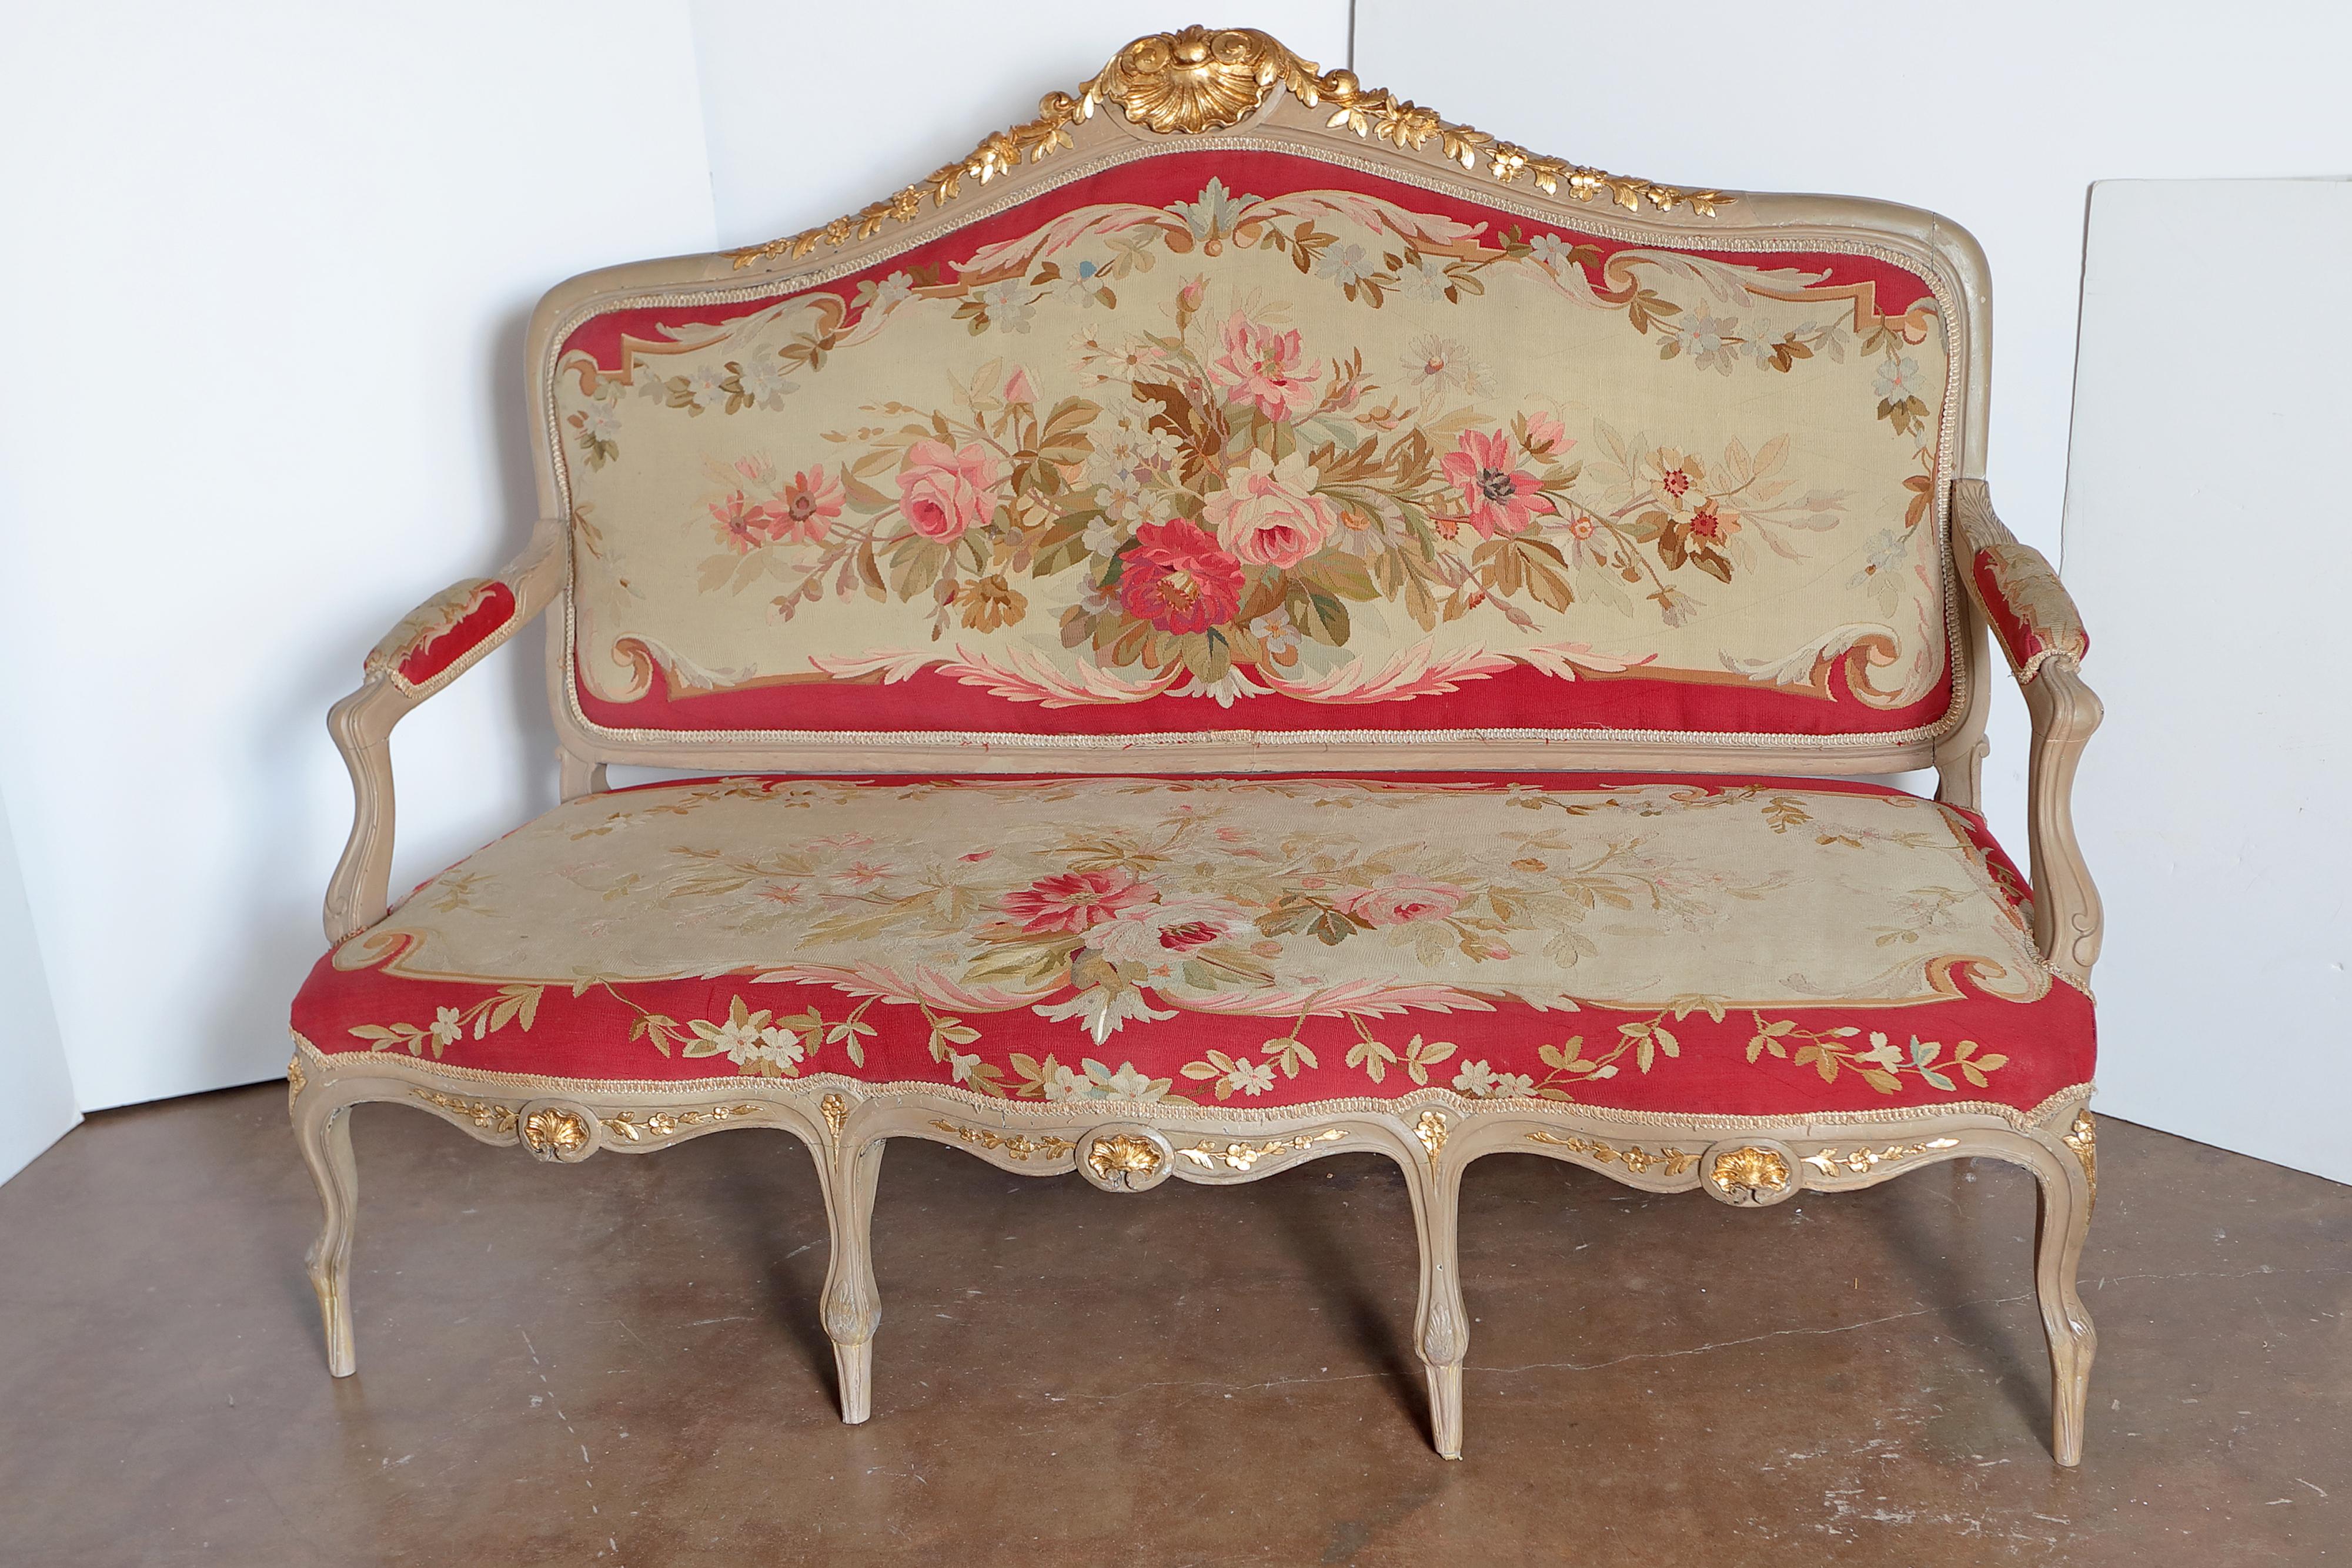 Belle grande suite française du 19ème siècle composée d'un canapé, de 4 fauteuils et de deux chaises latérales. Original peint en gris avec des détails dorés parcellaires. Magnifique tapisserie d'Aubusson avec des détails floraux.